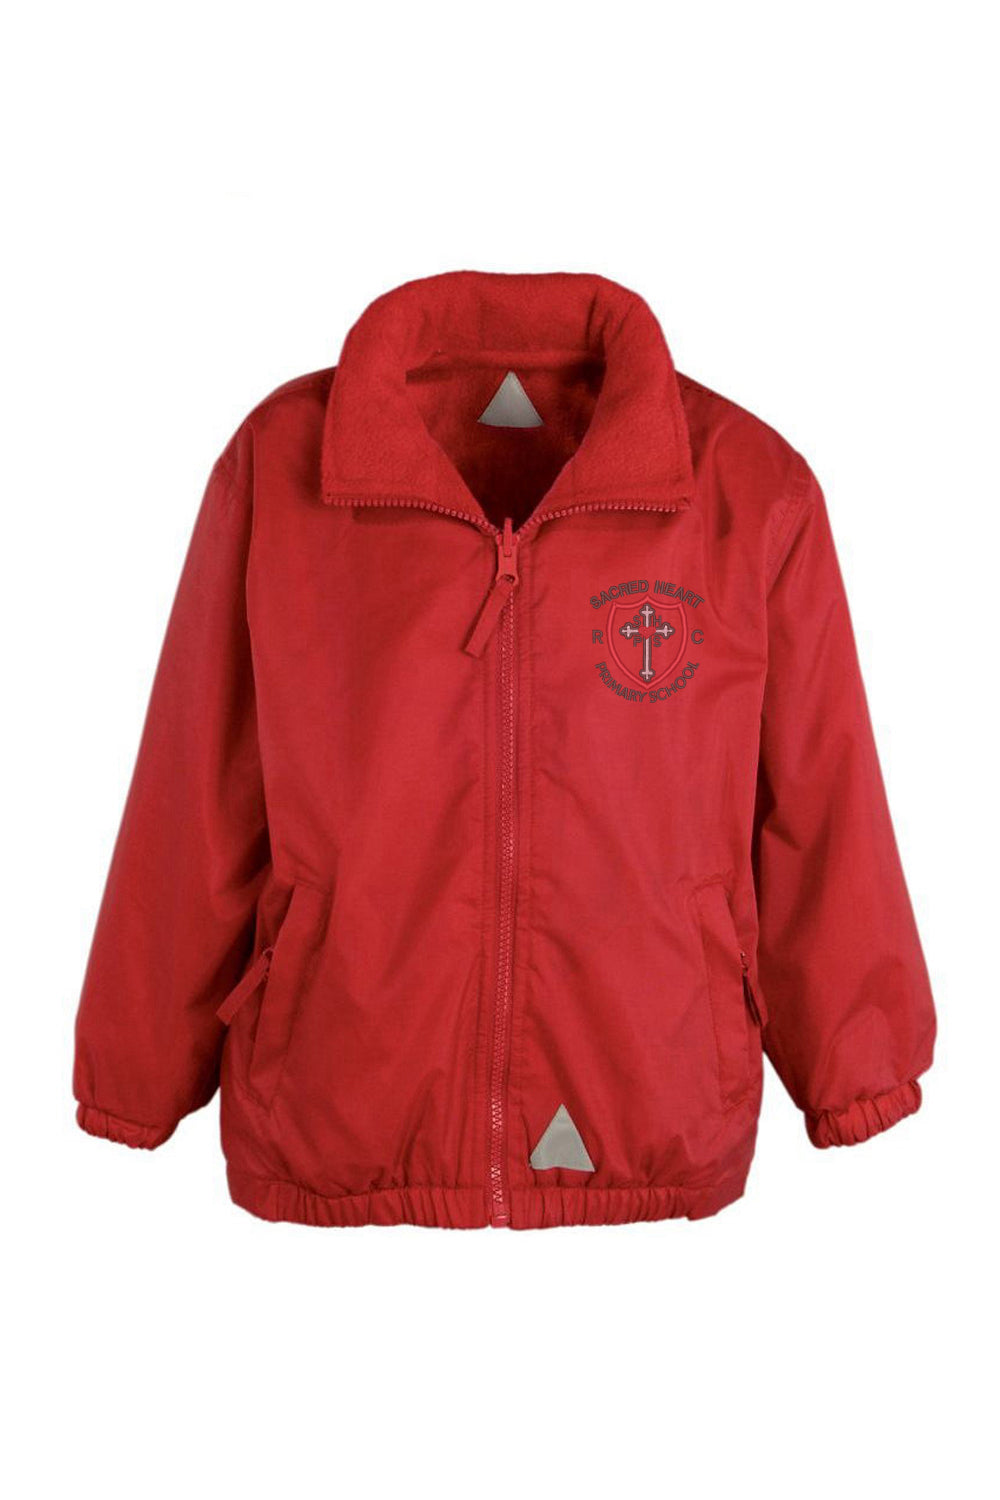 Sacred Heart Red Shower Jacket